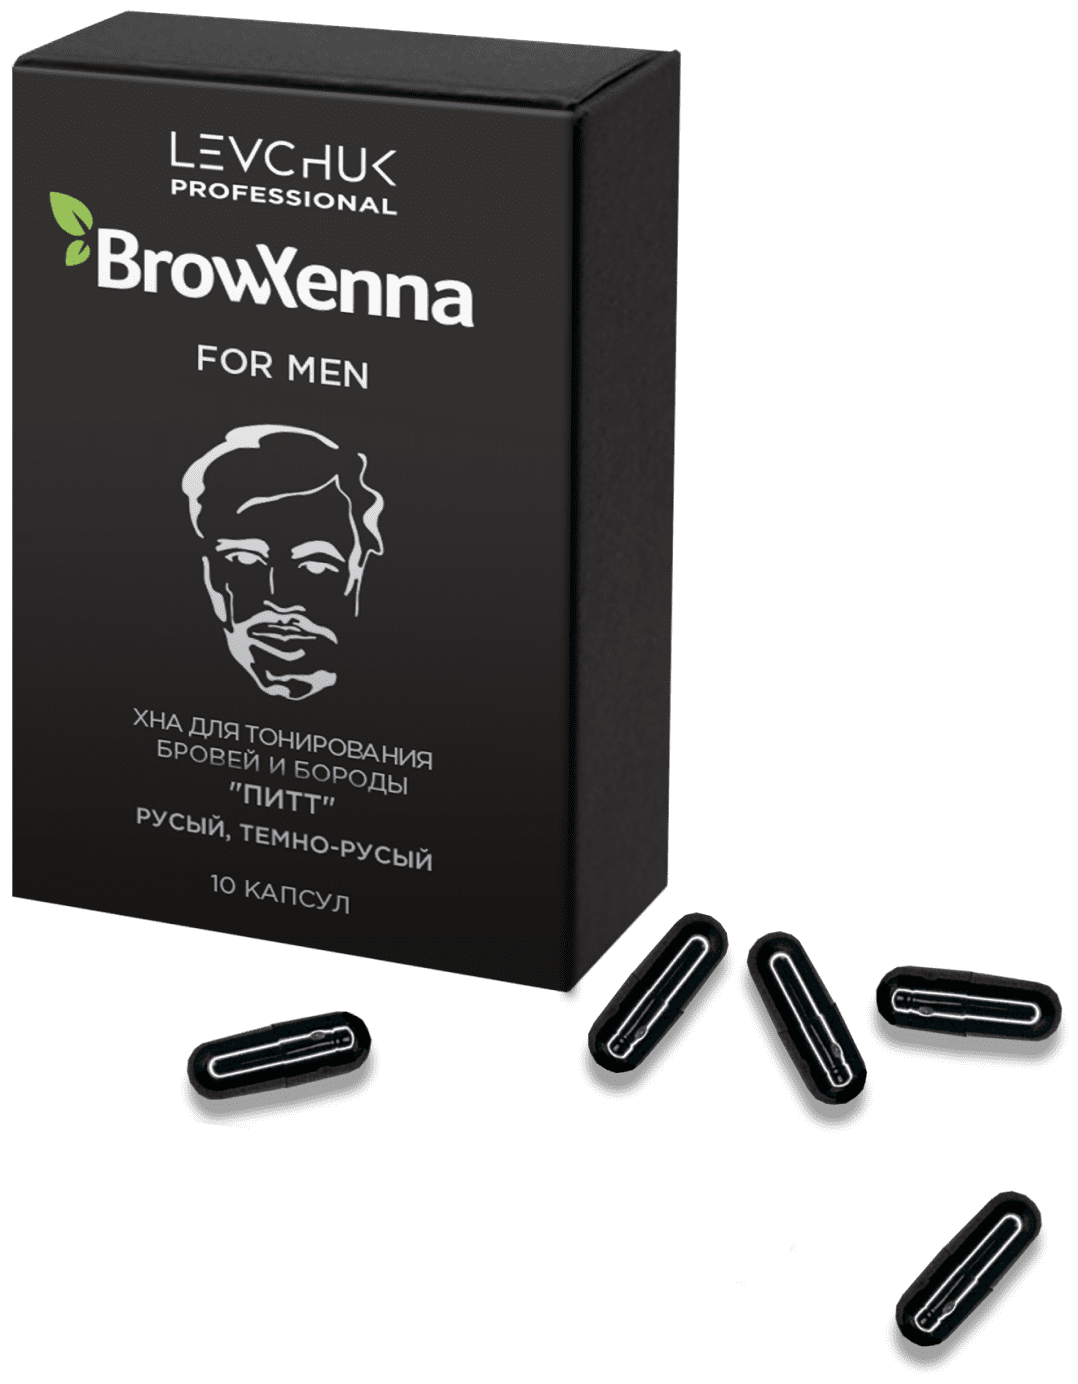 Хна для тонирования бровей и бороды BrowXenna for Men «Питт»